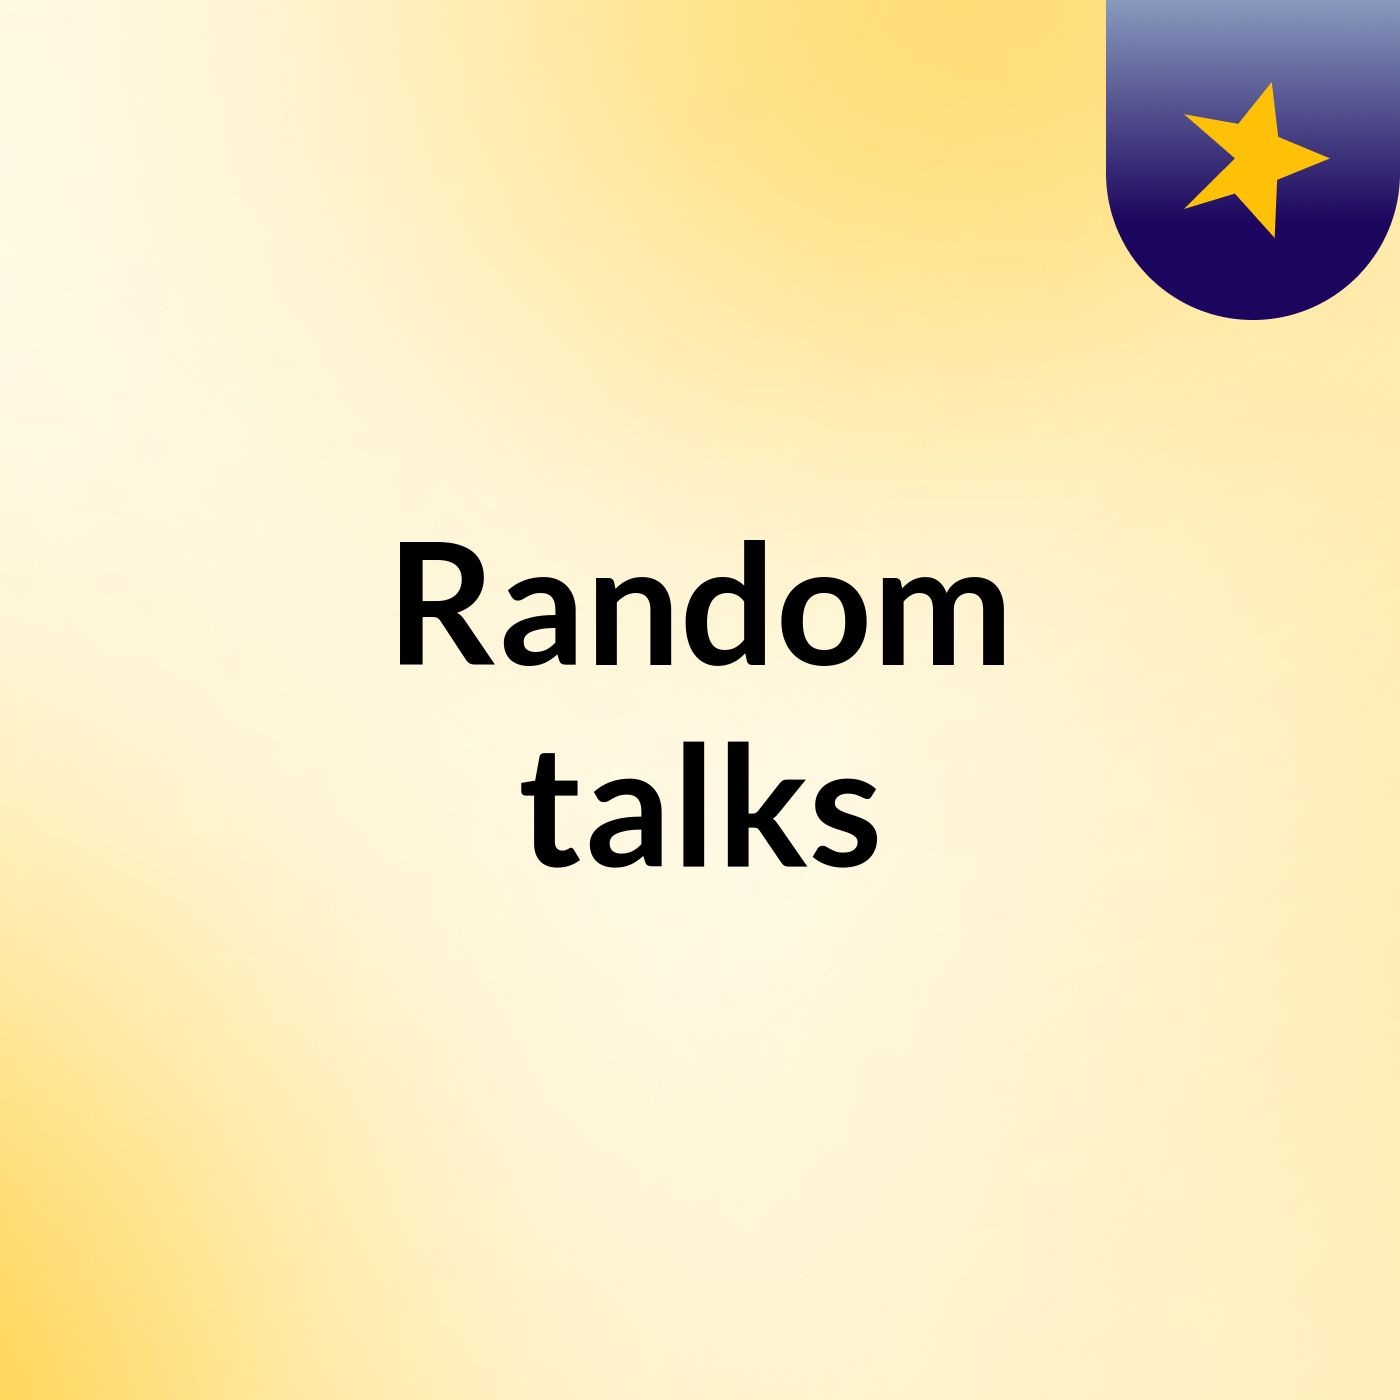 Random talks